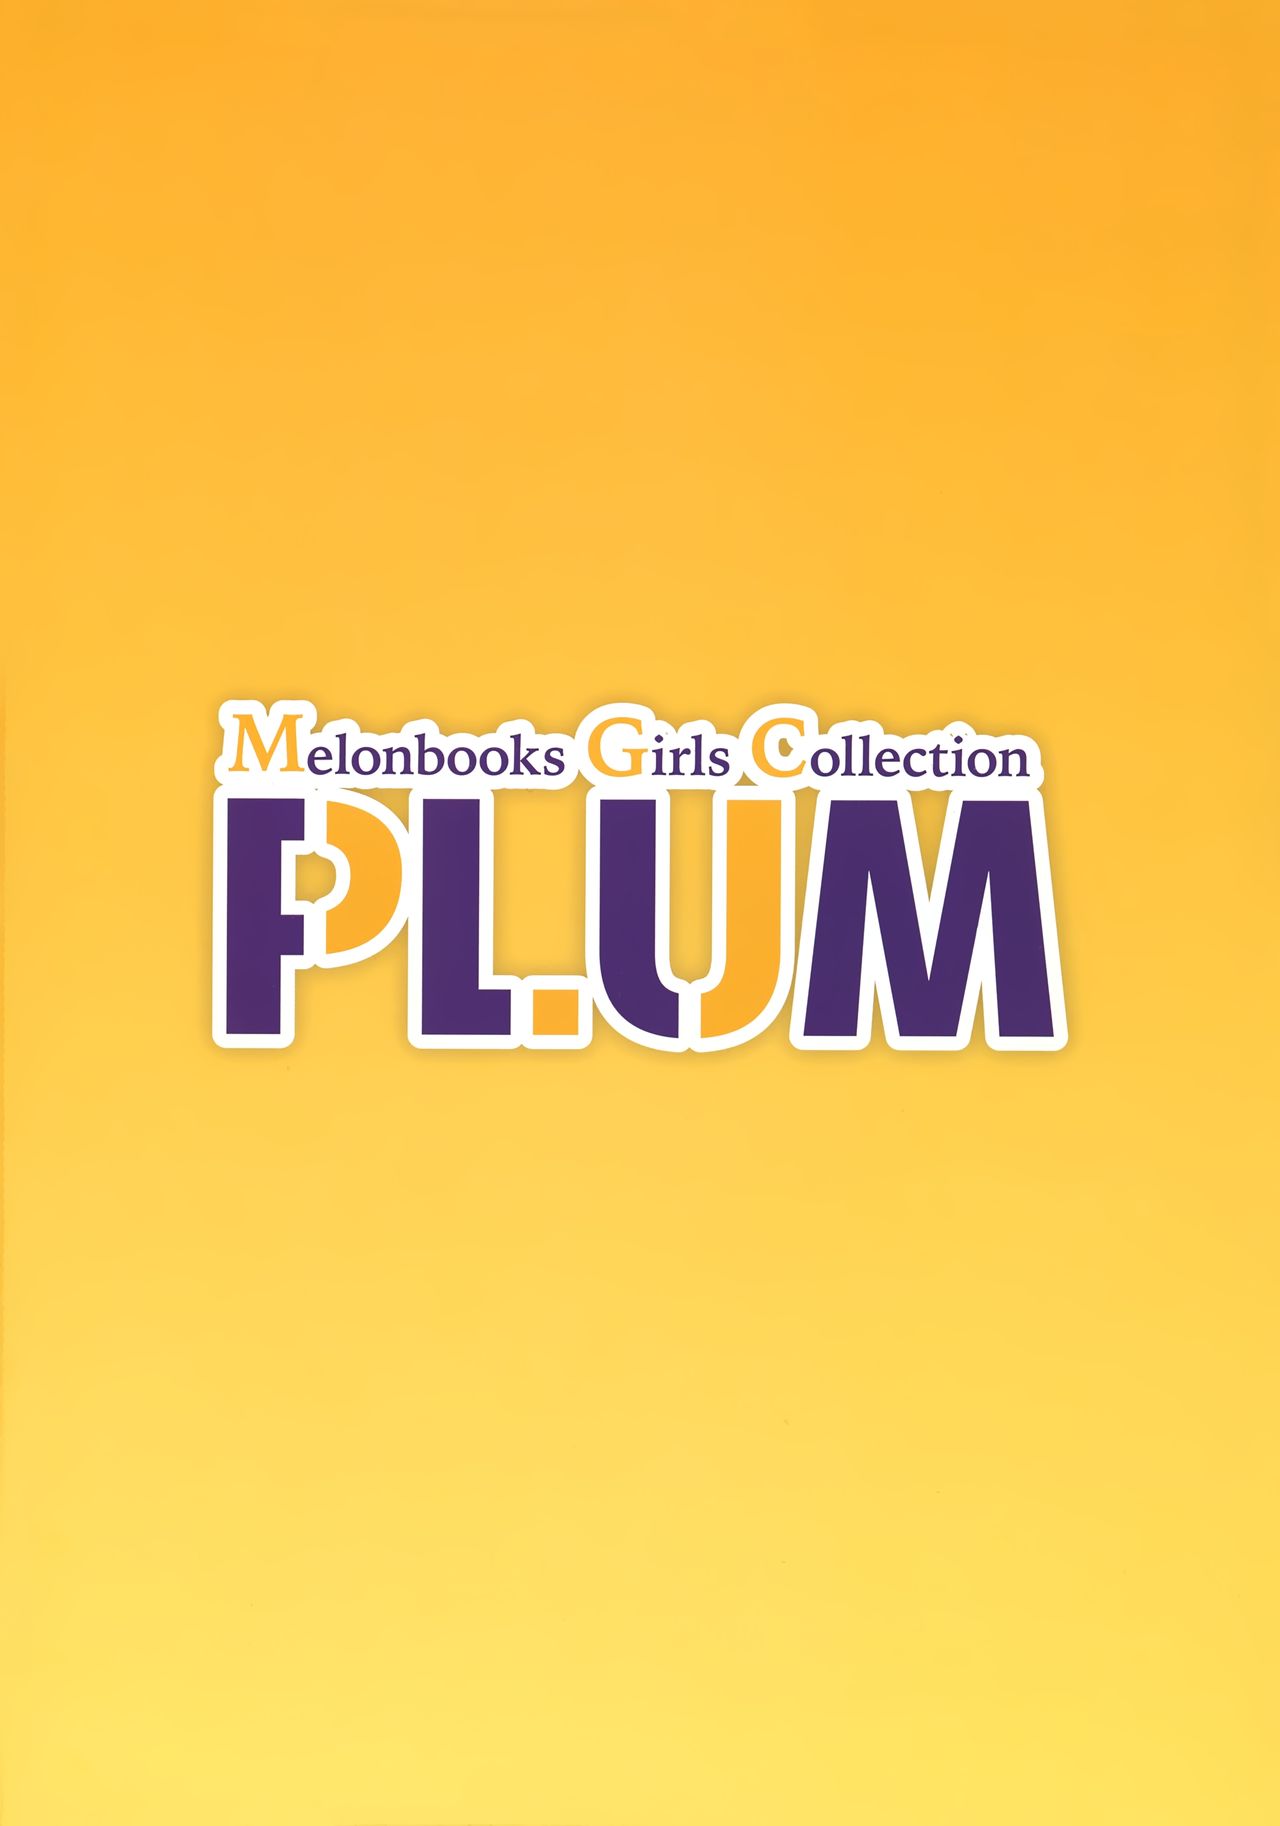 (2021年3月秋葉原超同人祭) 秋葉原超同人祭開催記念誌 Melonbooks Girls Collection Plum